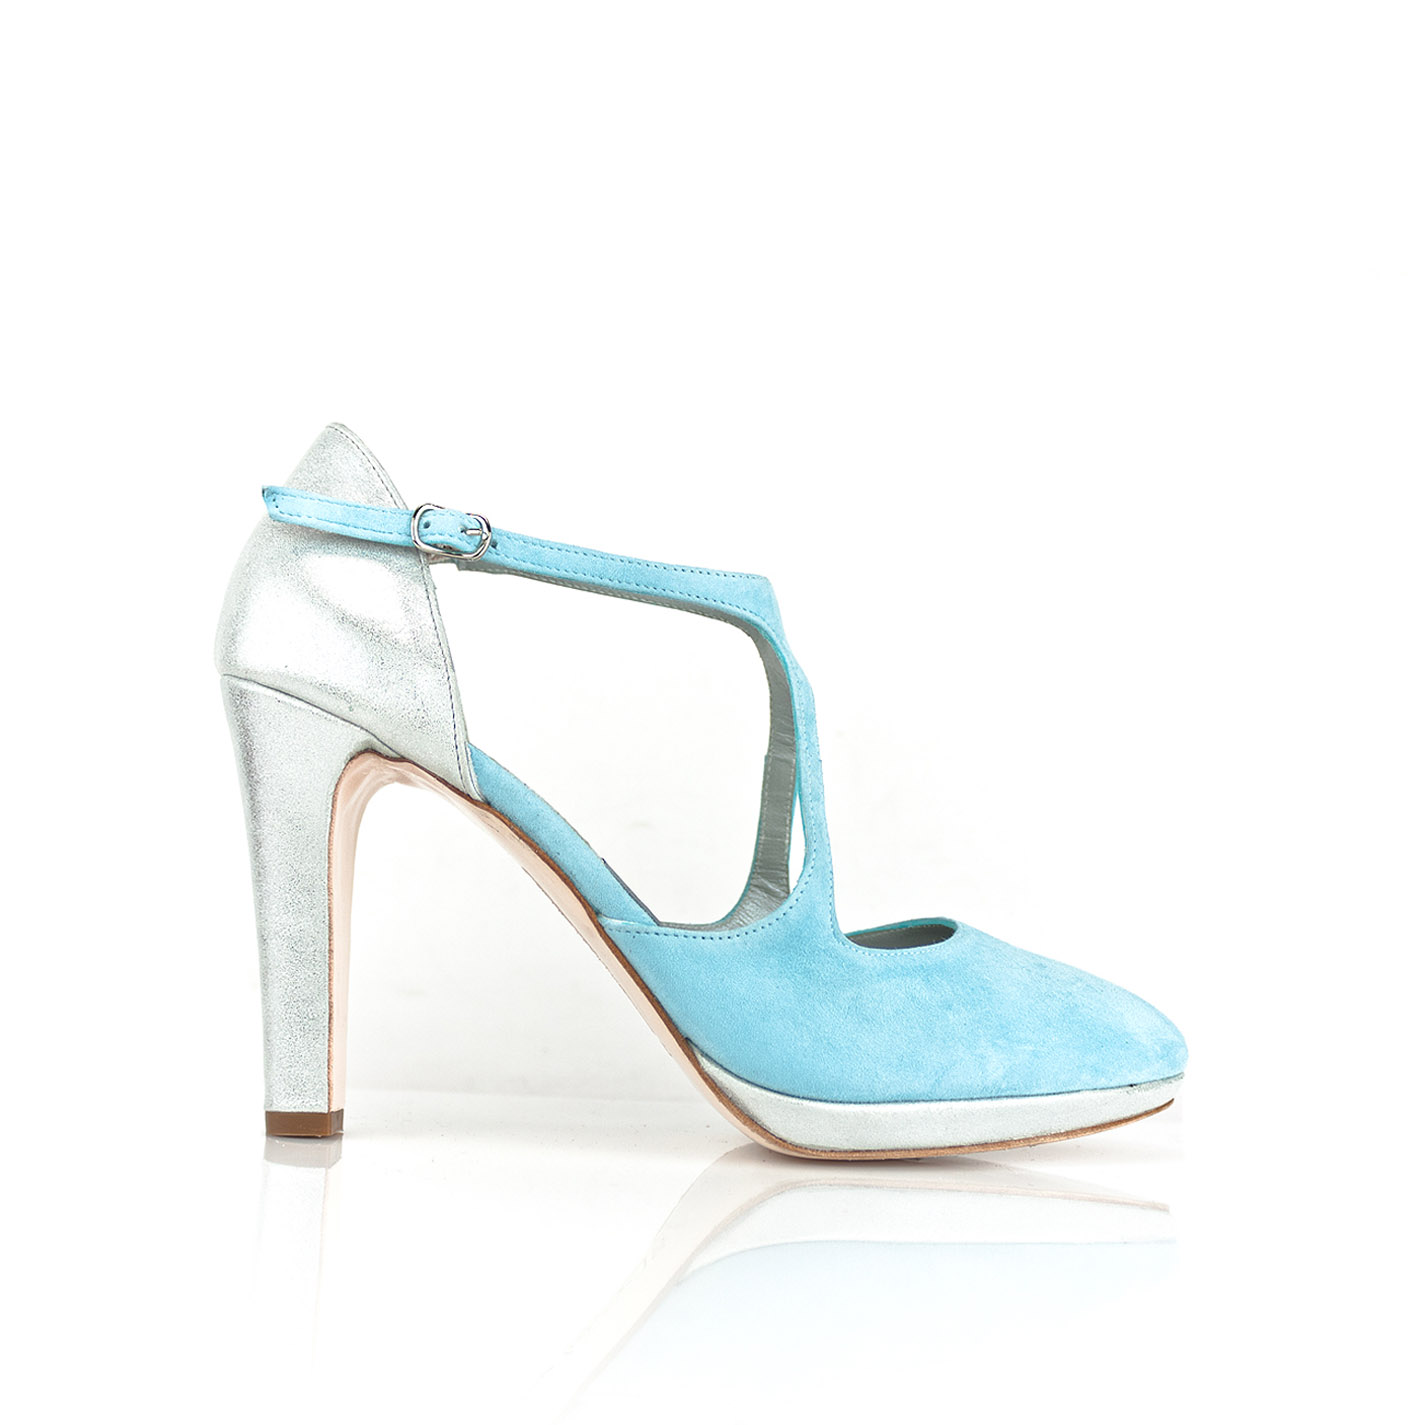 Equipar Portavoz Sustancial zapato de mujer salon ante azul y plata en tacon de 9 cm y plataforma